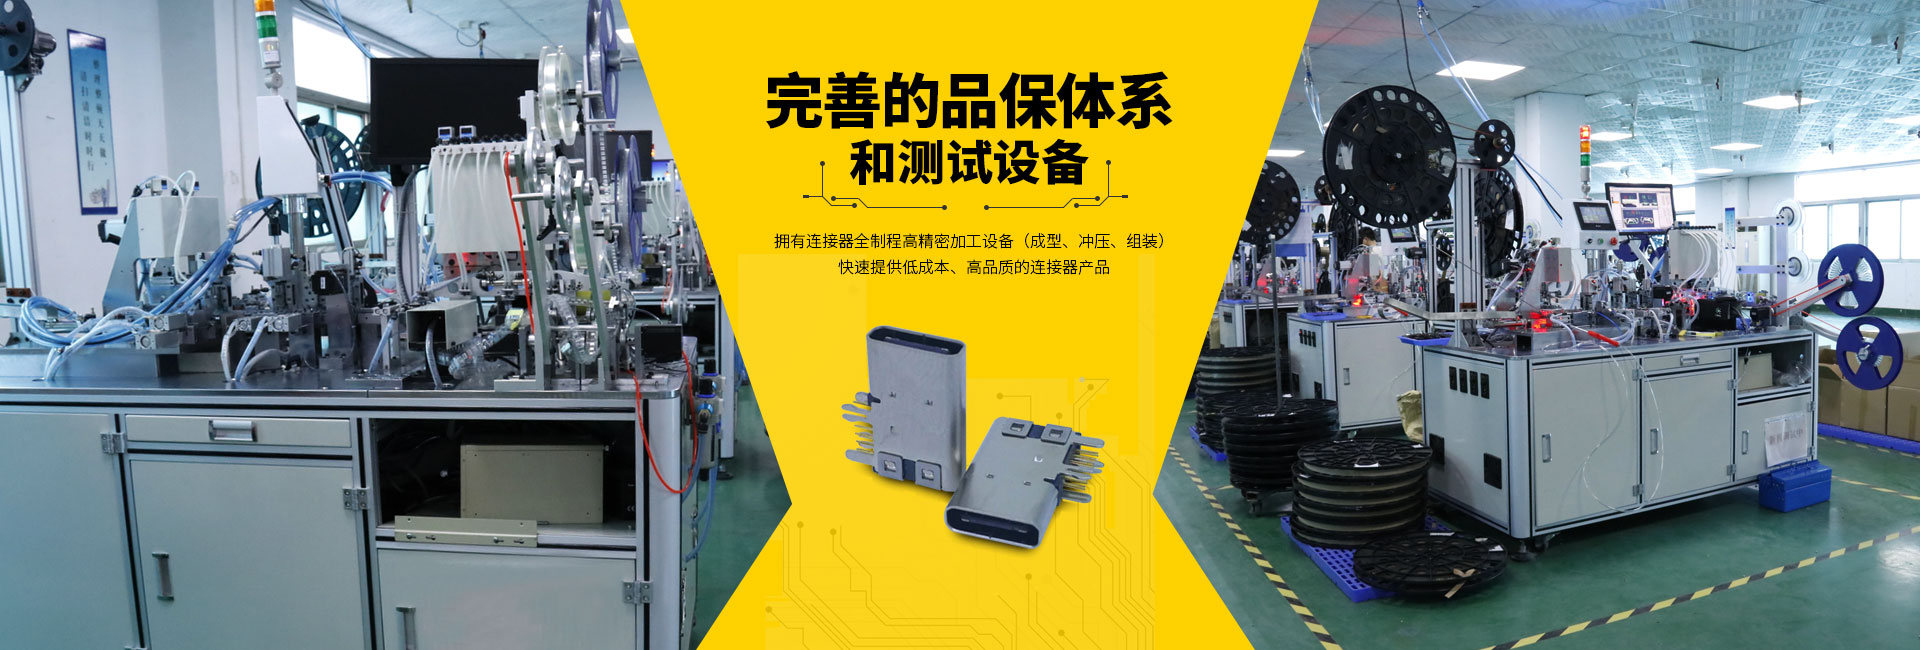 深圳市新升华电子器件有限公司 